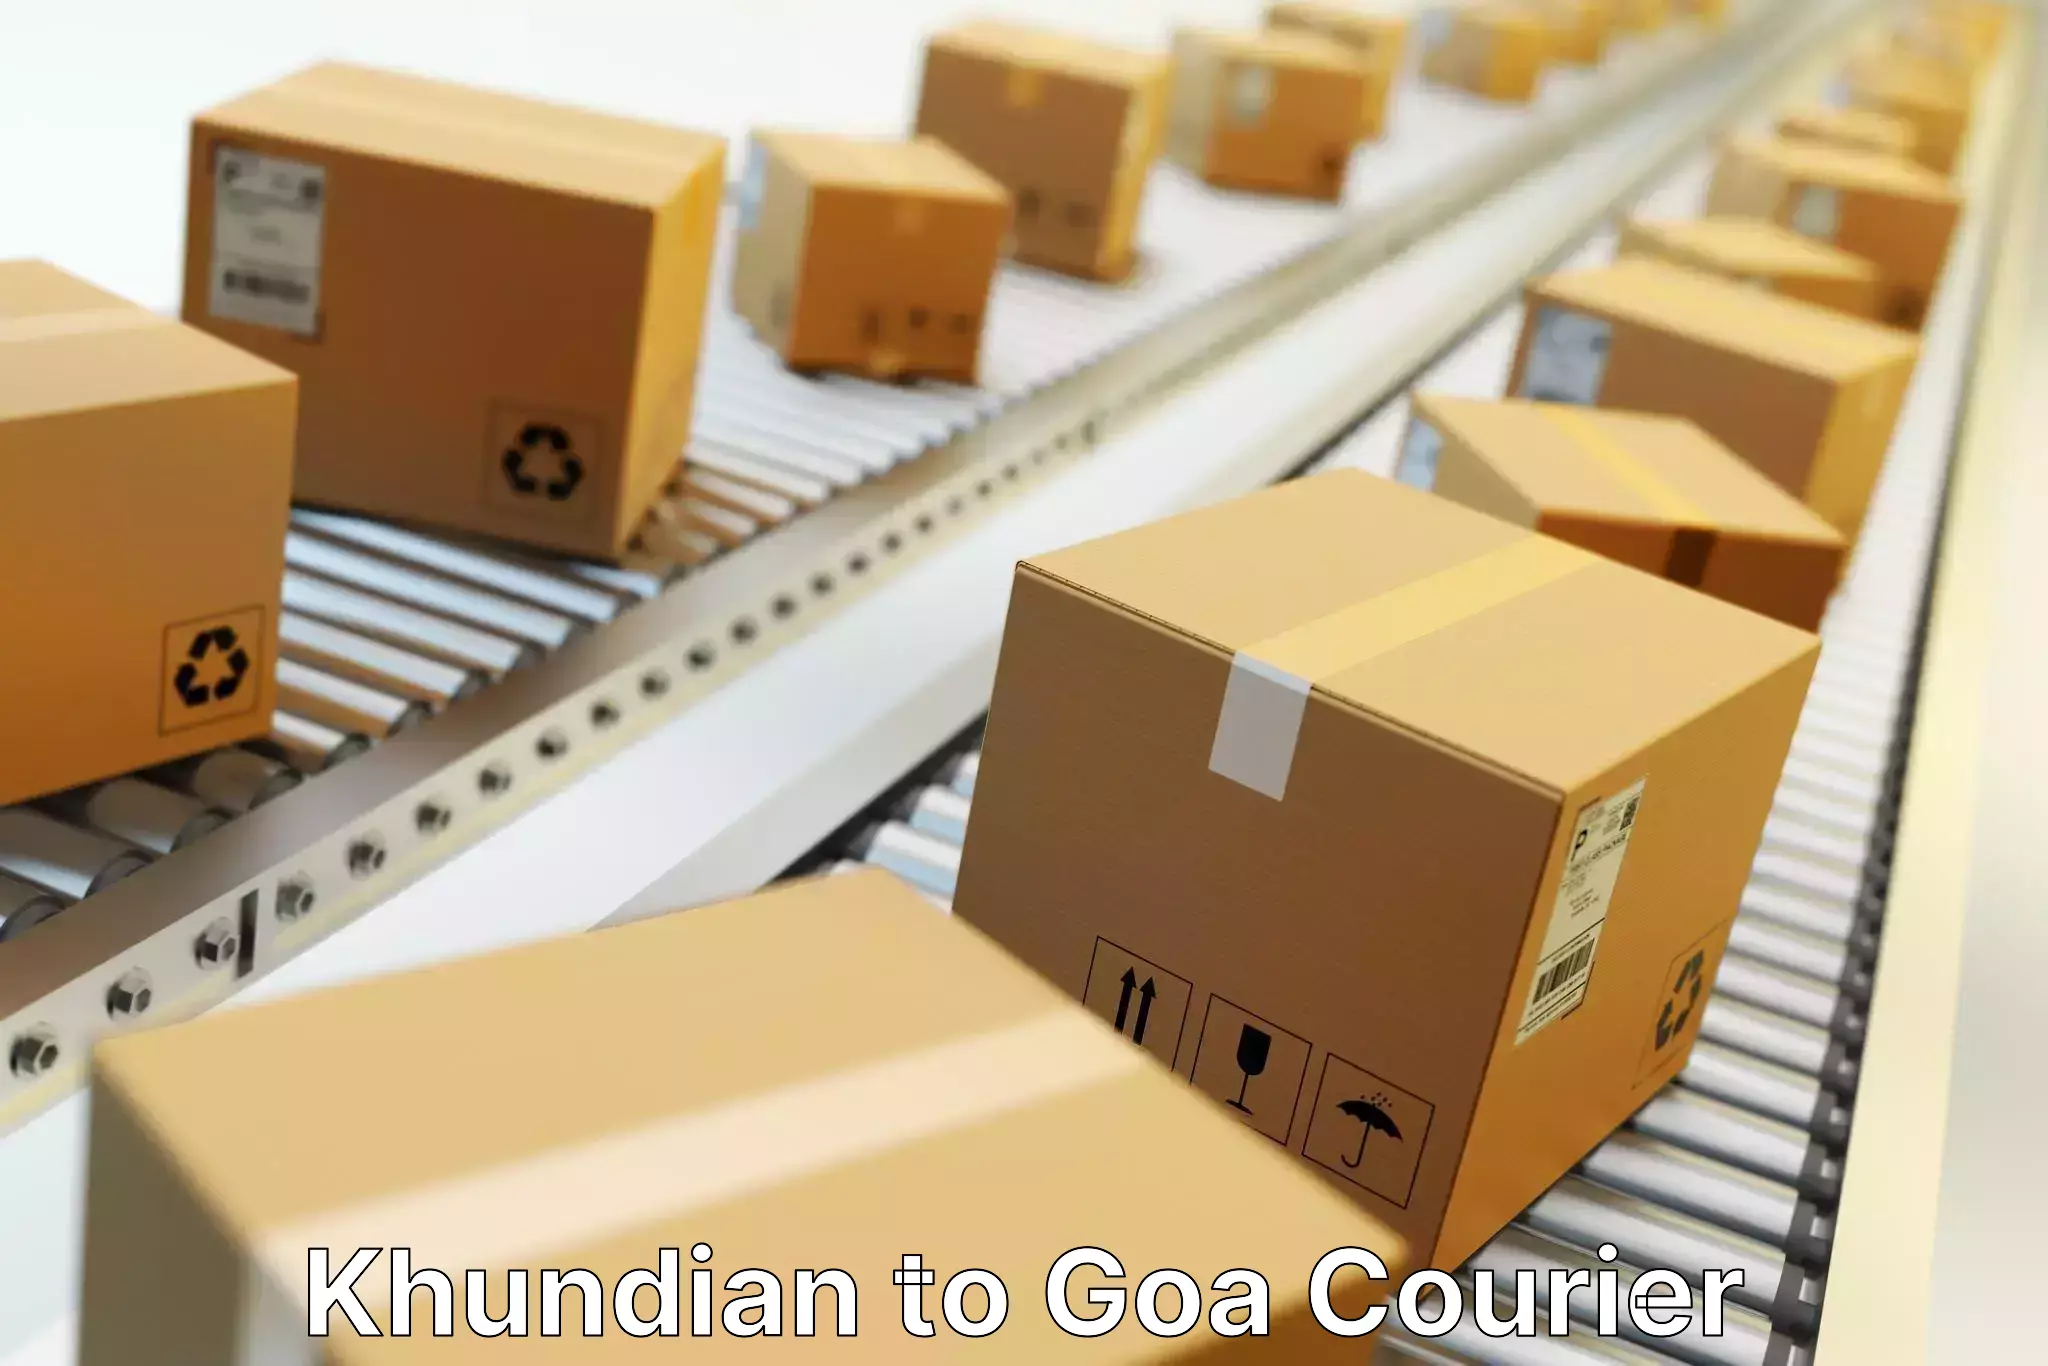 Door-to-door freight service Khundian to Goa